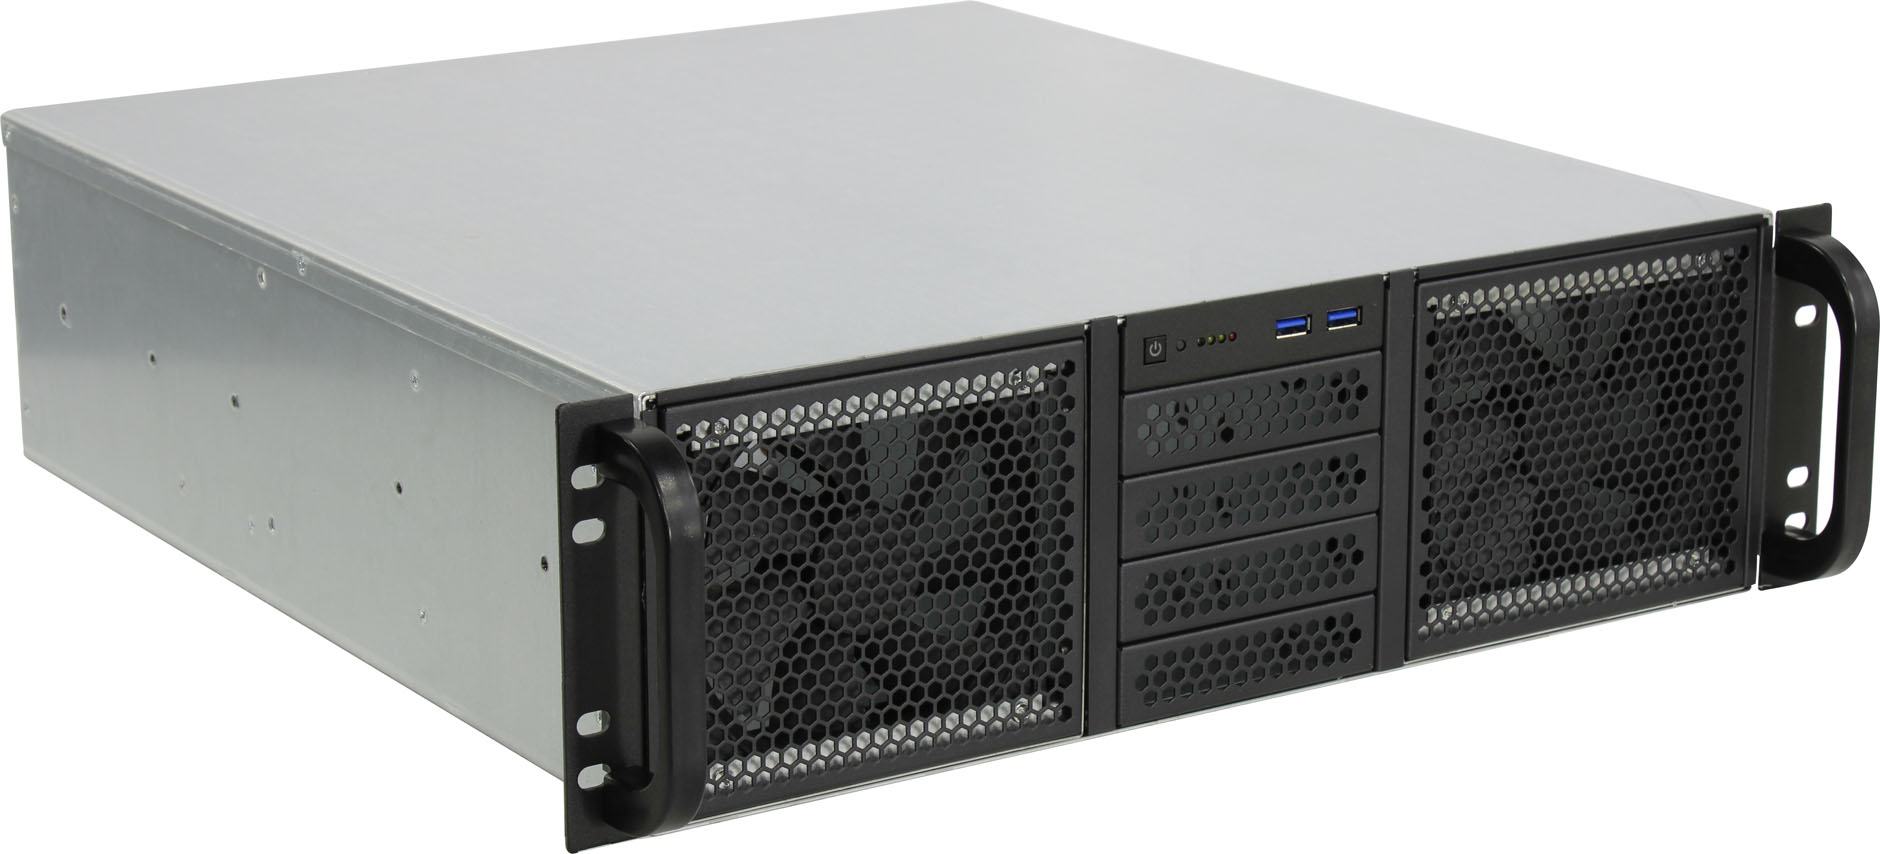 Procase RE306-D0H14-C-48 Корпус 3U server case,0x5.25+14HDD,черный,без блока питания,глуби